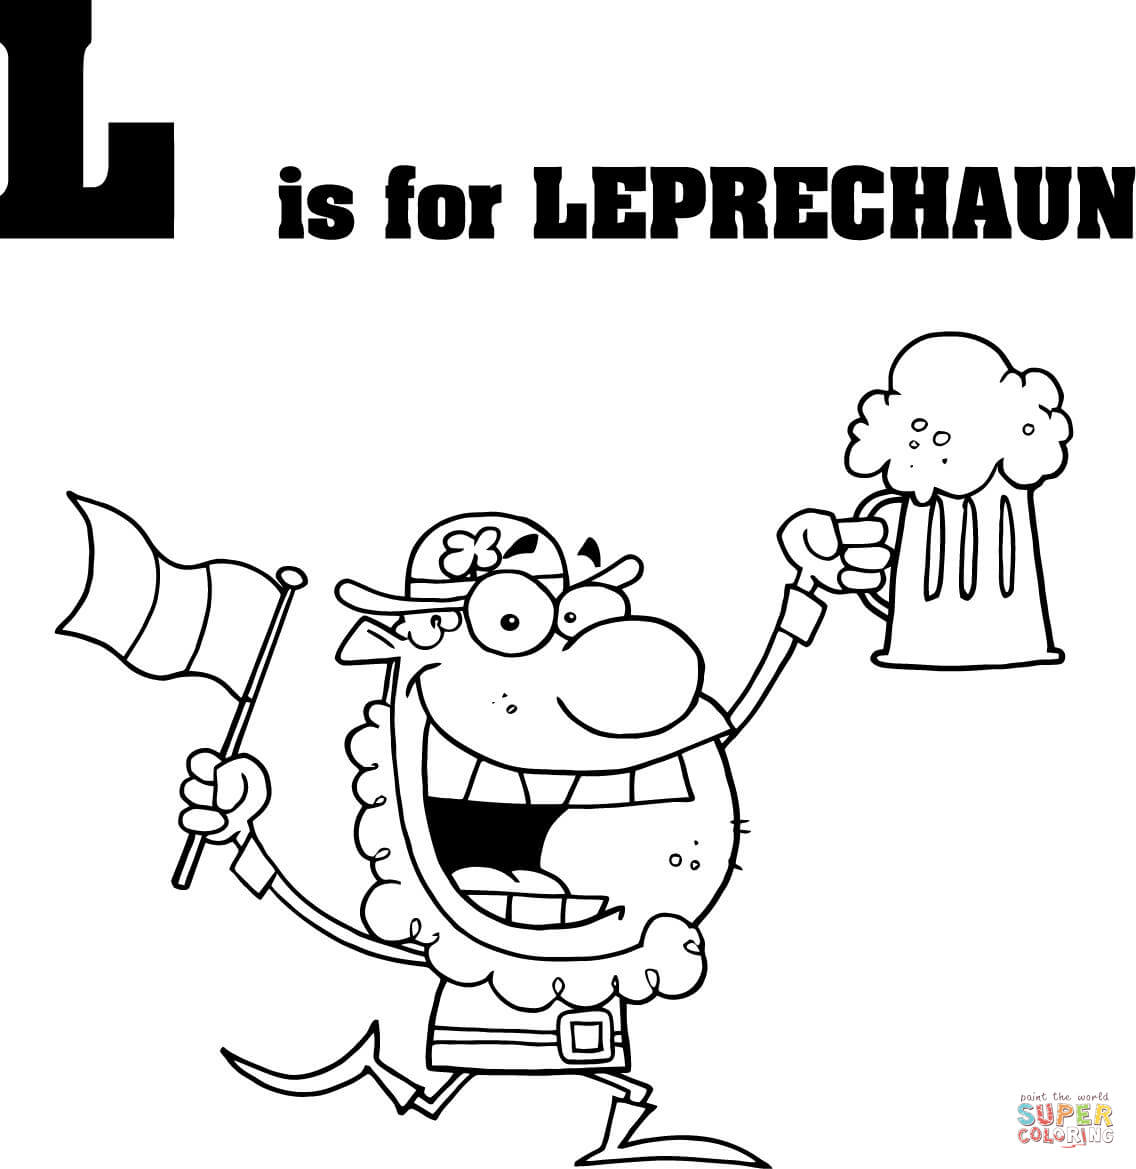 La lettera L sta per Leprechaun dalla lettera L